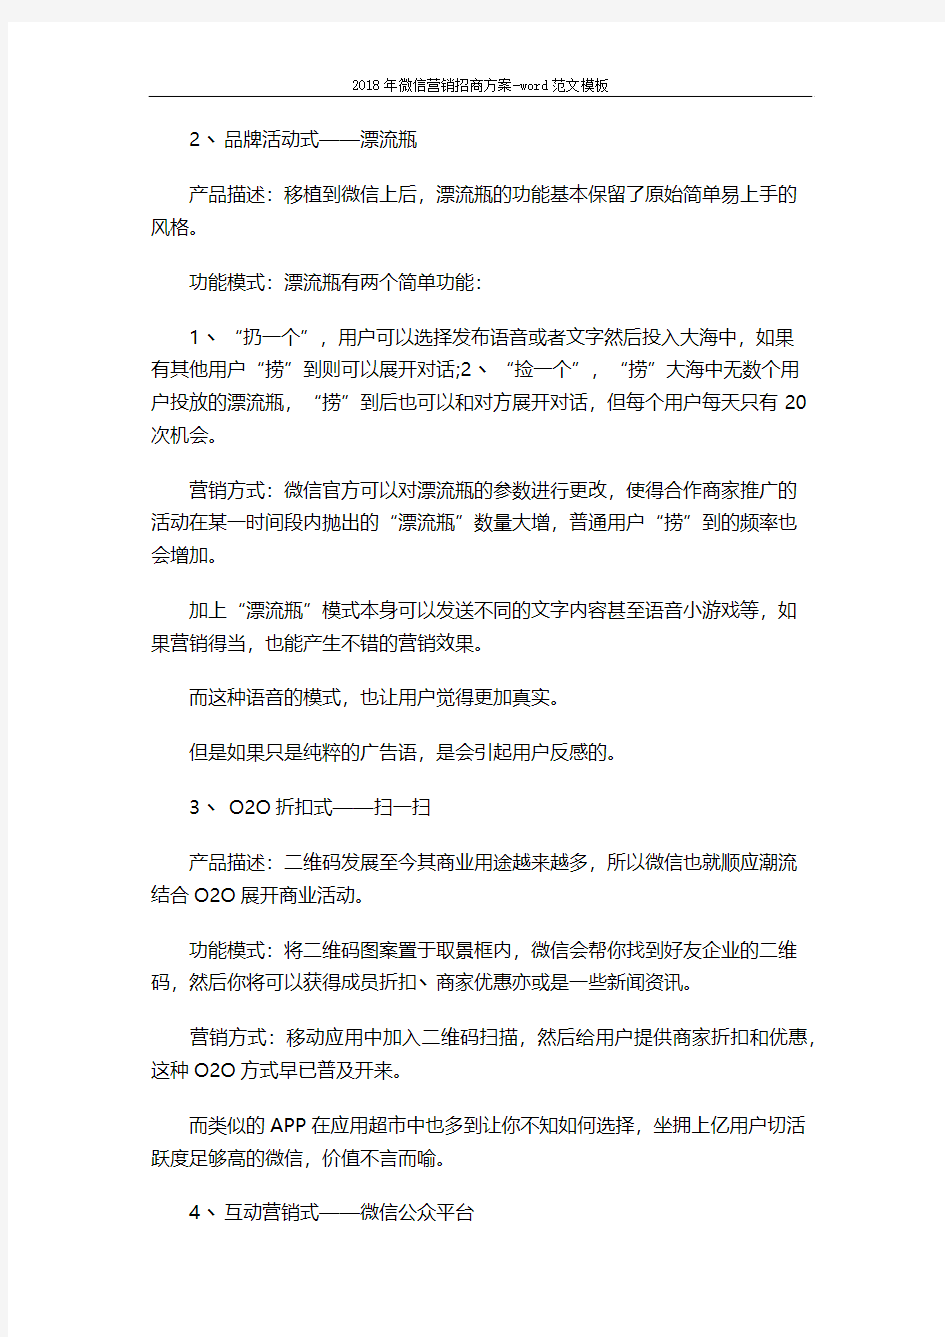 2018年微信营销招商方案-word范文模板 (3页)